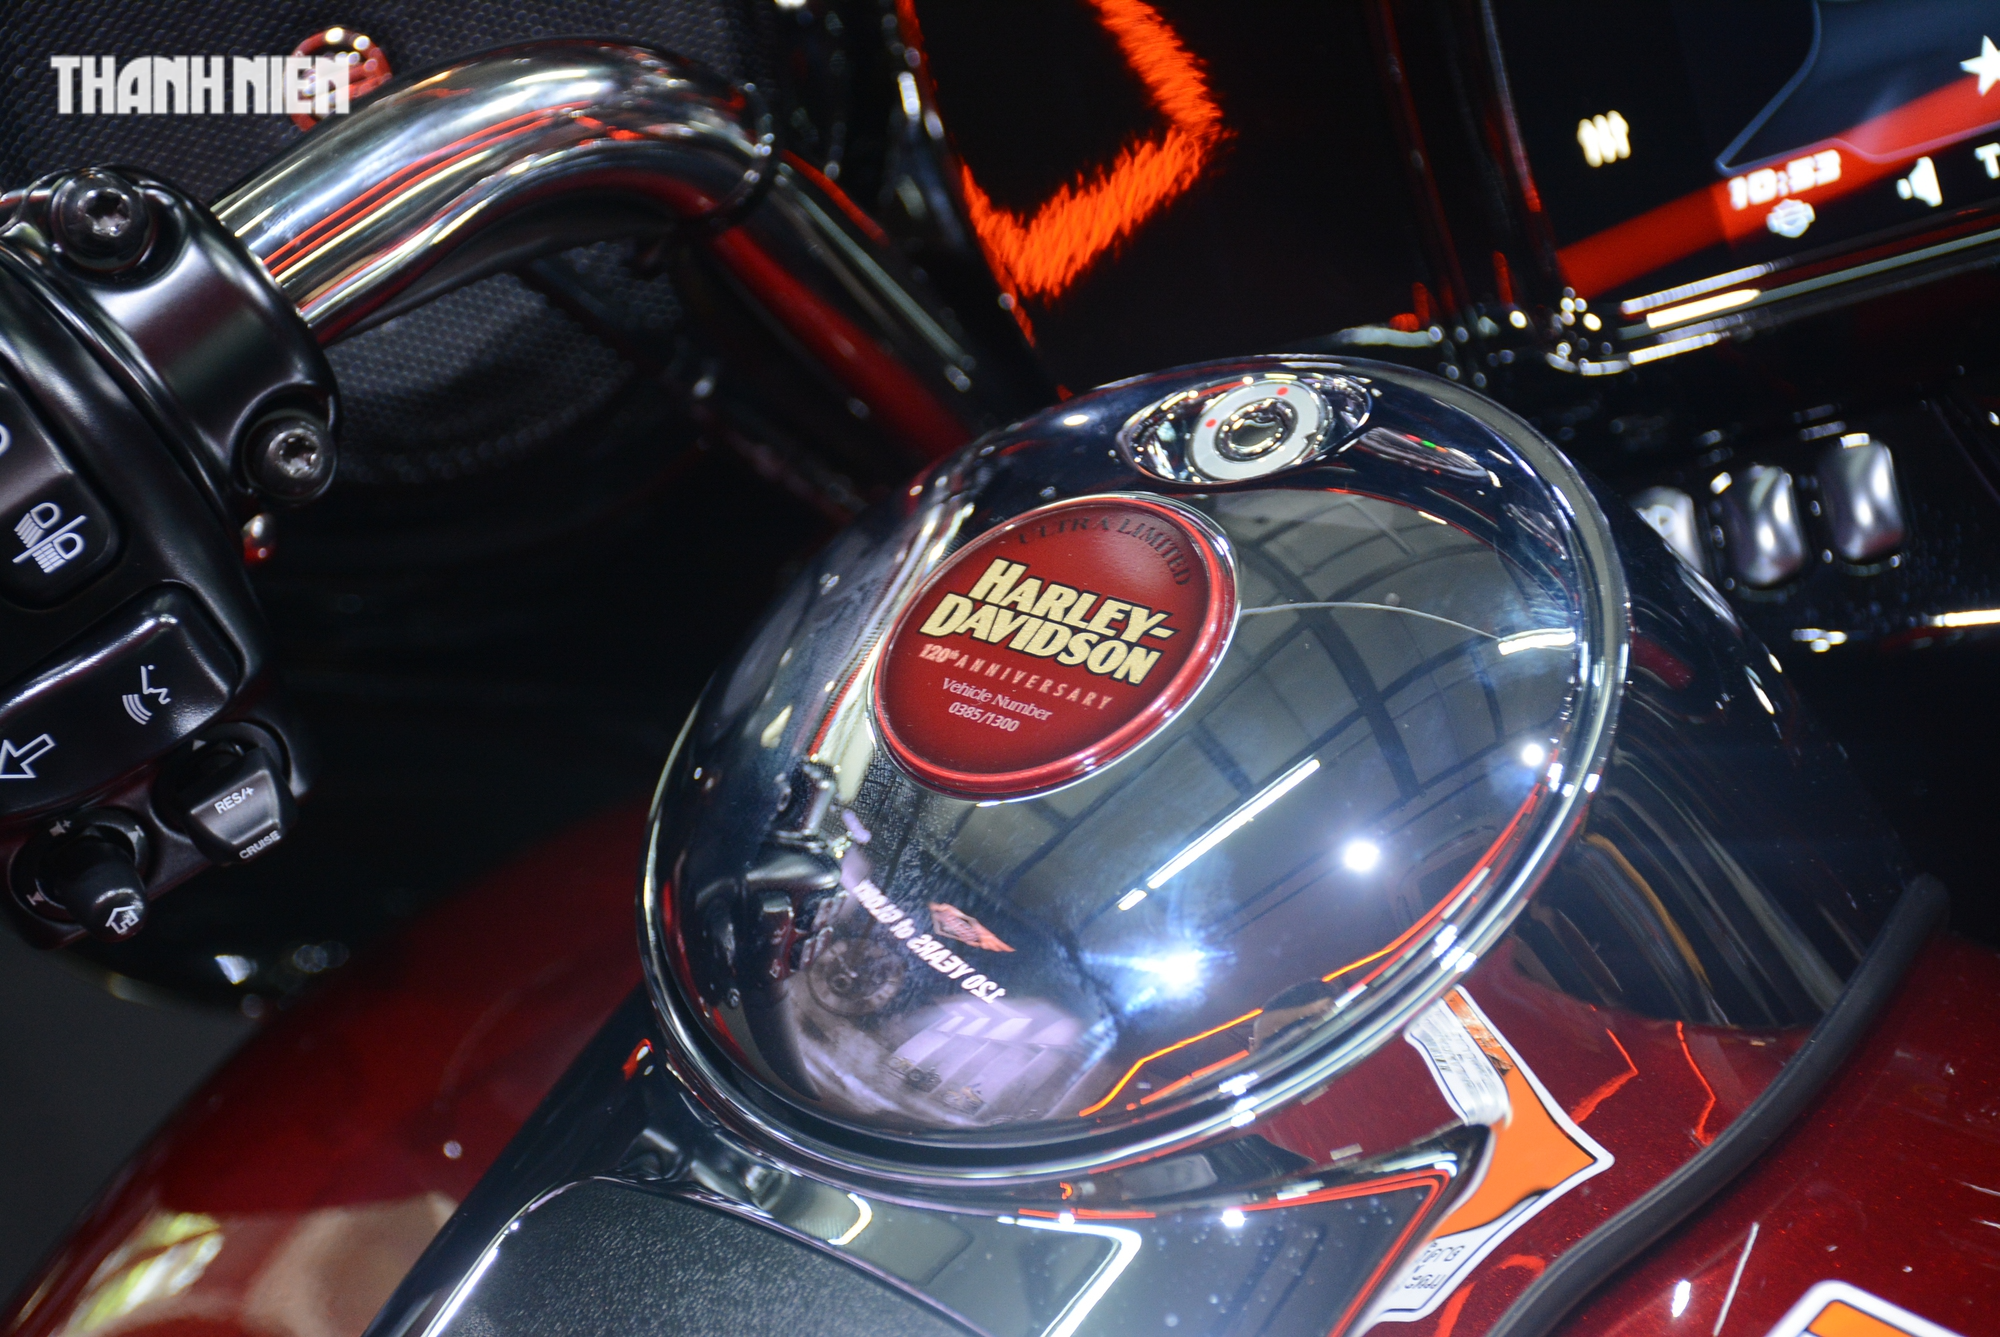 Dàn mô tô Harley-Davidson bản đặc biệt trị giá gần 10 tỉ đồng về Việt Nam - Ảnh 3.